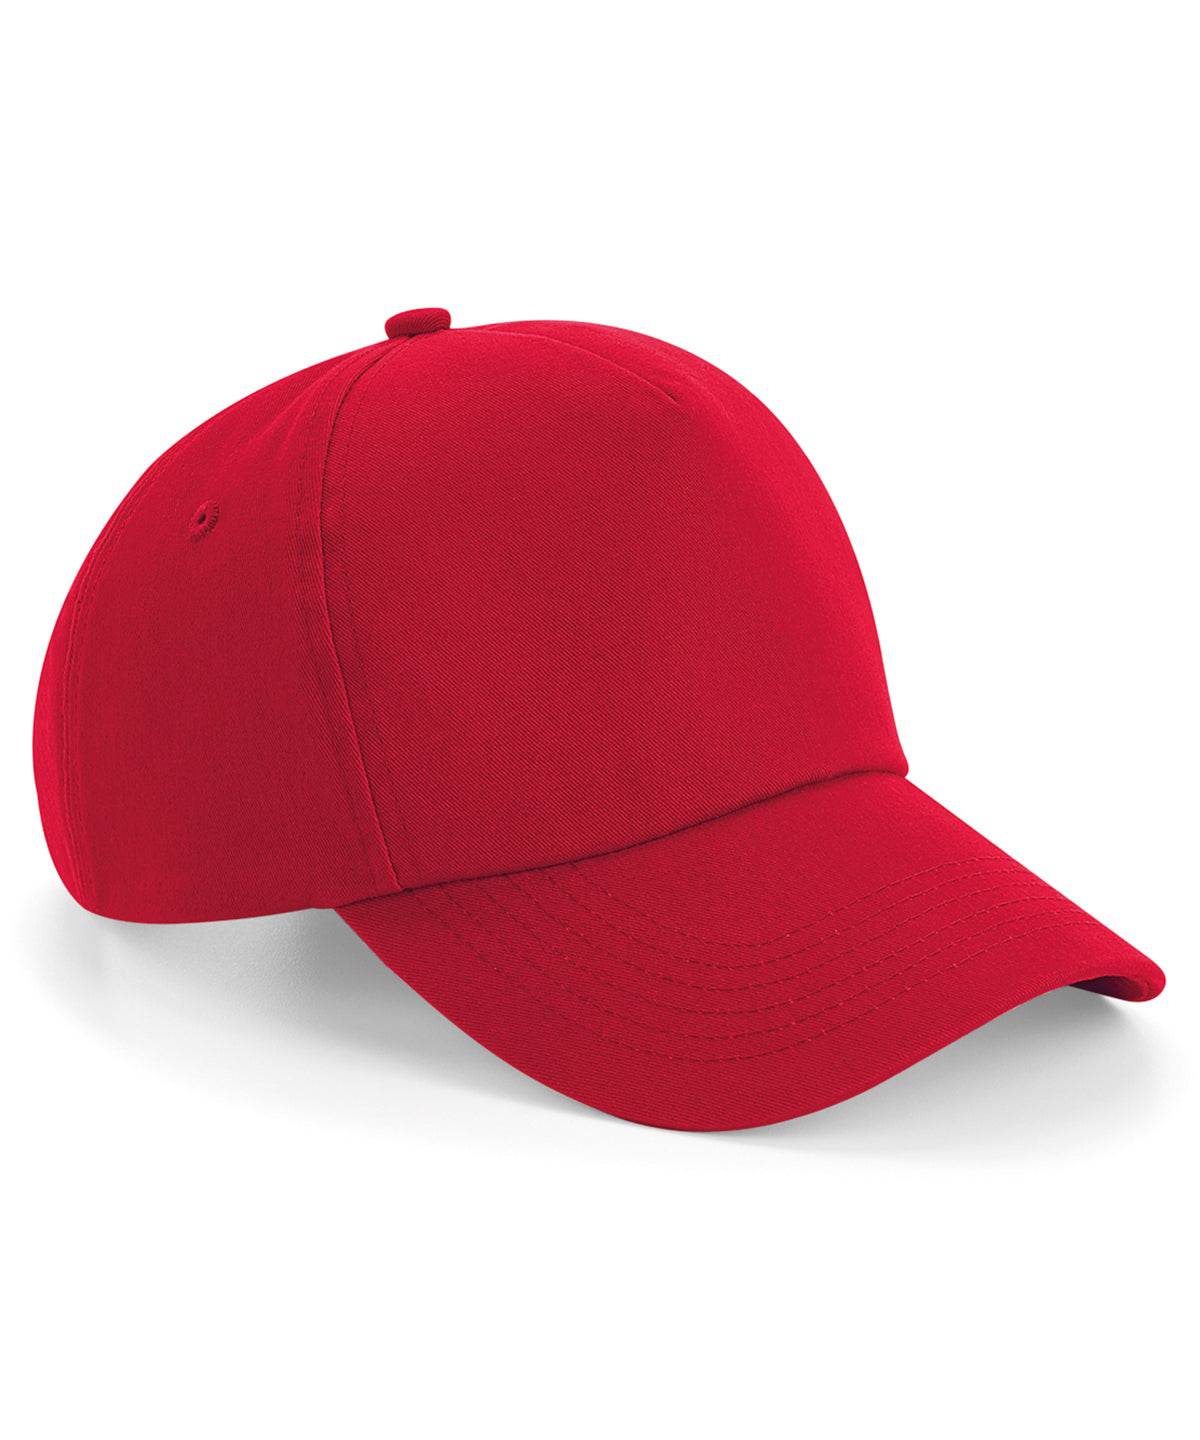 Classic Red - Authentic 5-panel cap